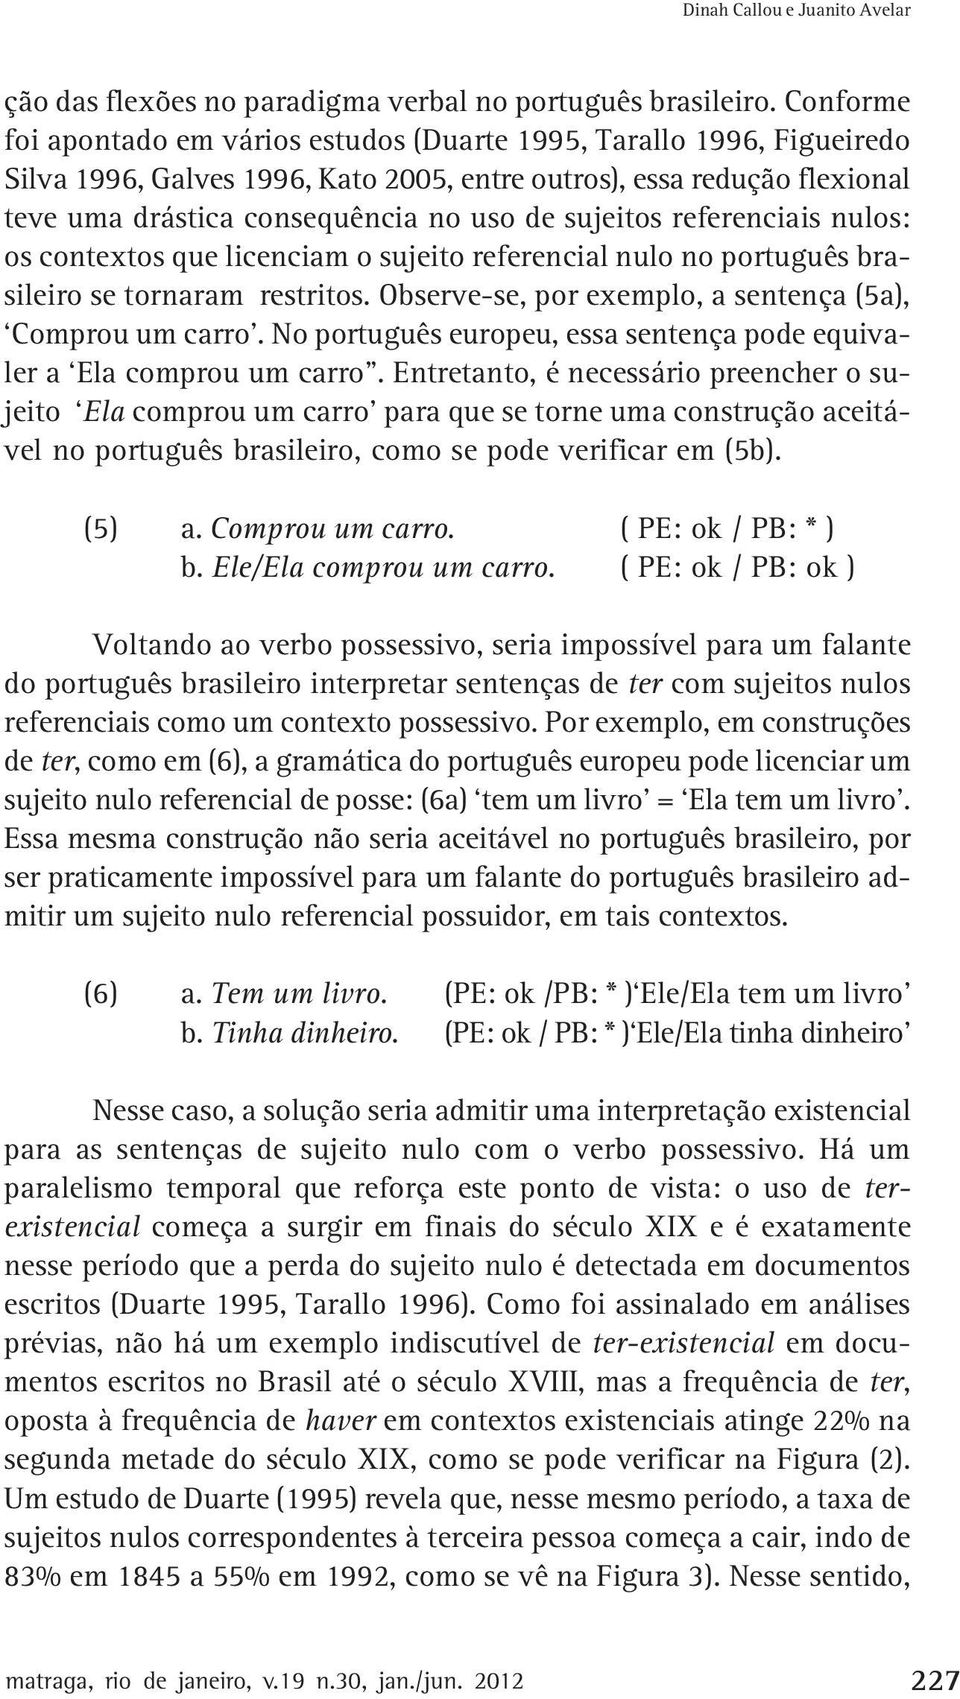 sujeitos referenciais nulos: os contextos que licenciam o sujeito referencial nulo no português brasileiro se tornaram restritos. Observe-se, por exemplo, a sentença (5a), Comprou um carro.